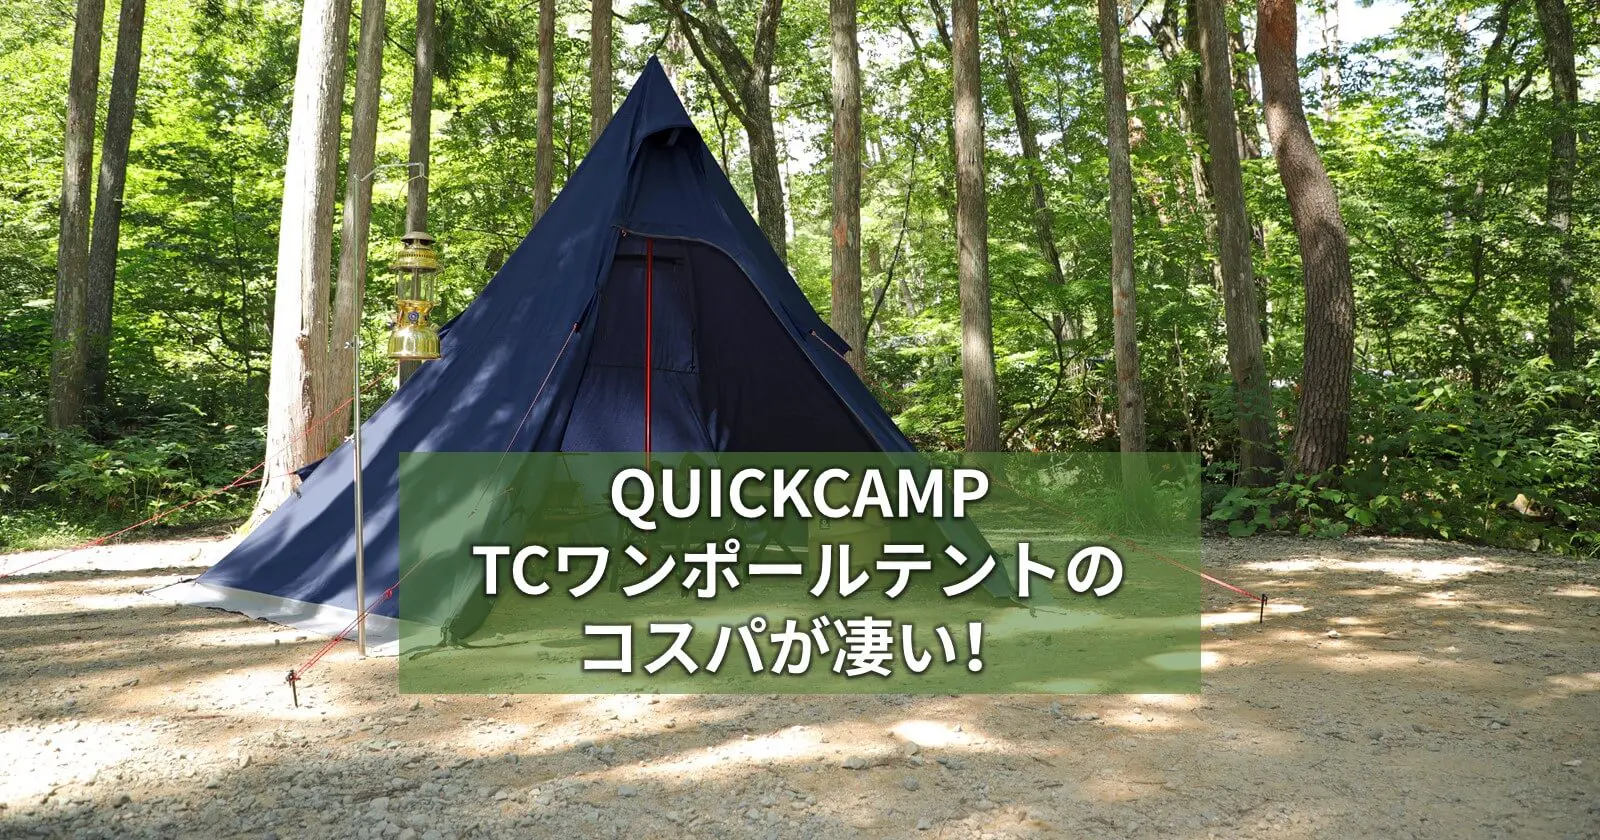 QUICKCAMP TCワンポールテントのコスパが凄い！ | キャンプ